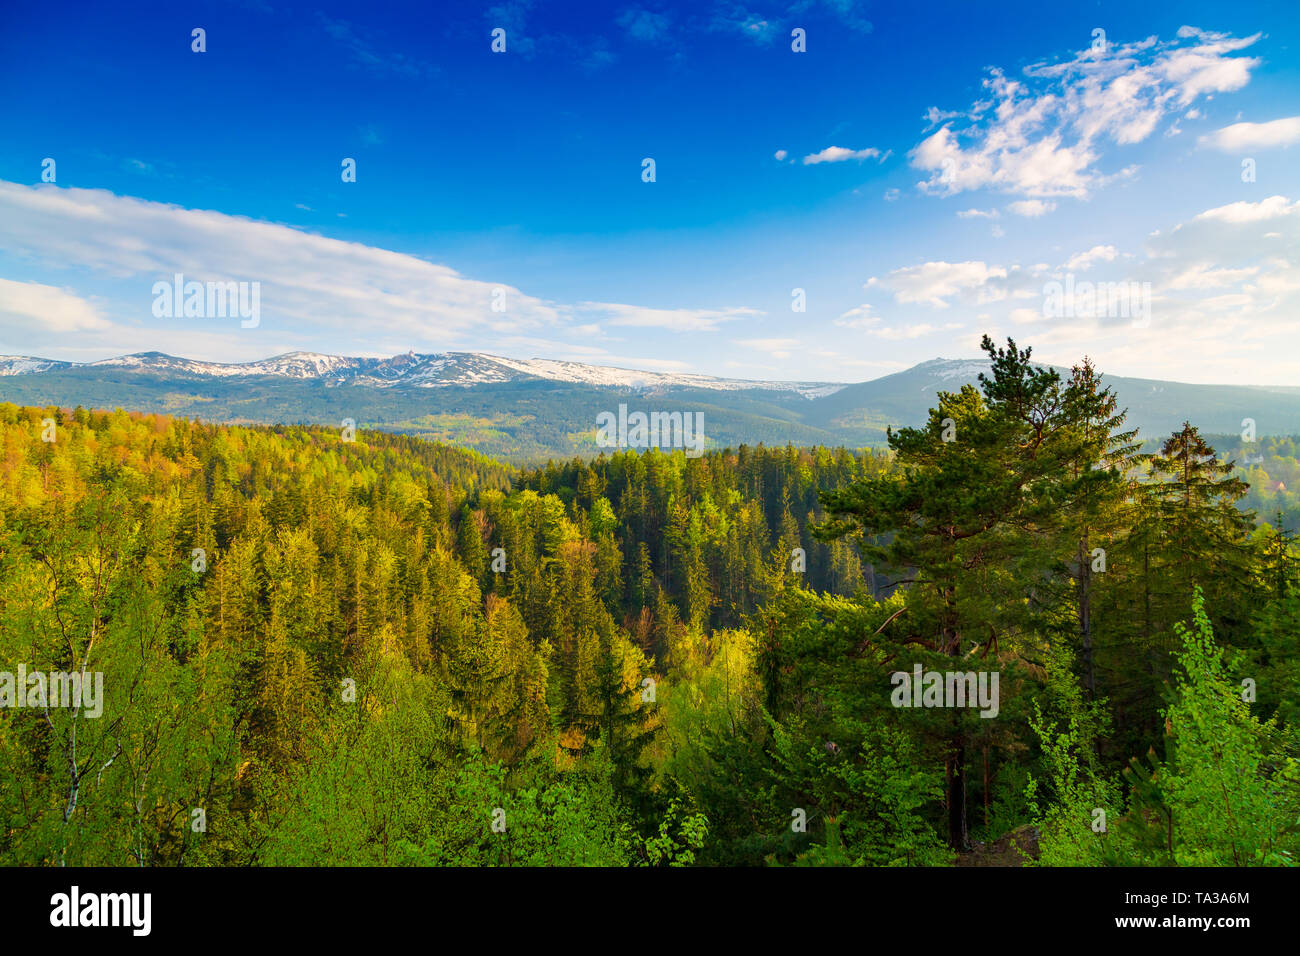 Scenic spring landscape of Giant Mountains - Karkonosze Mounatains, Poland Stock Photo